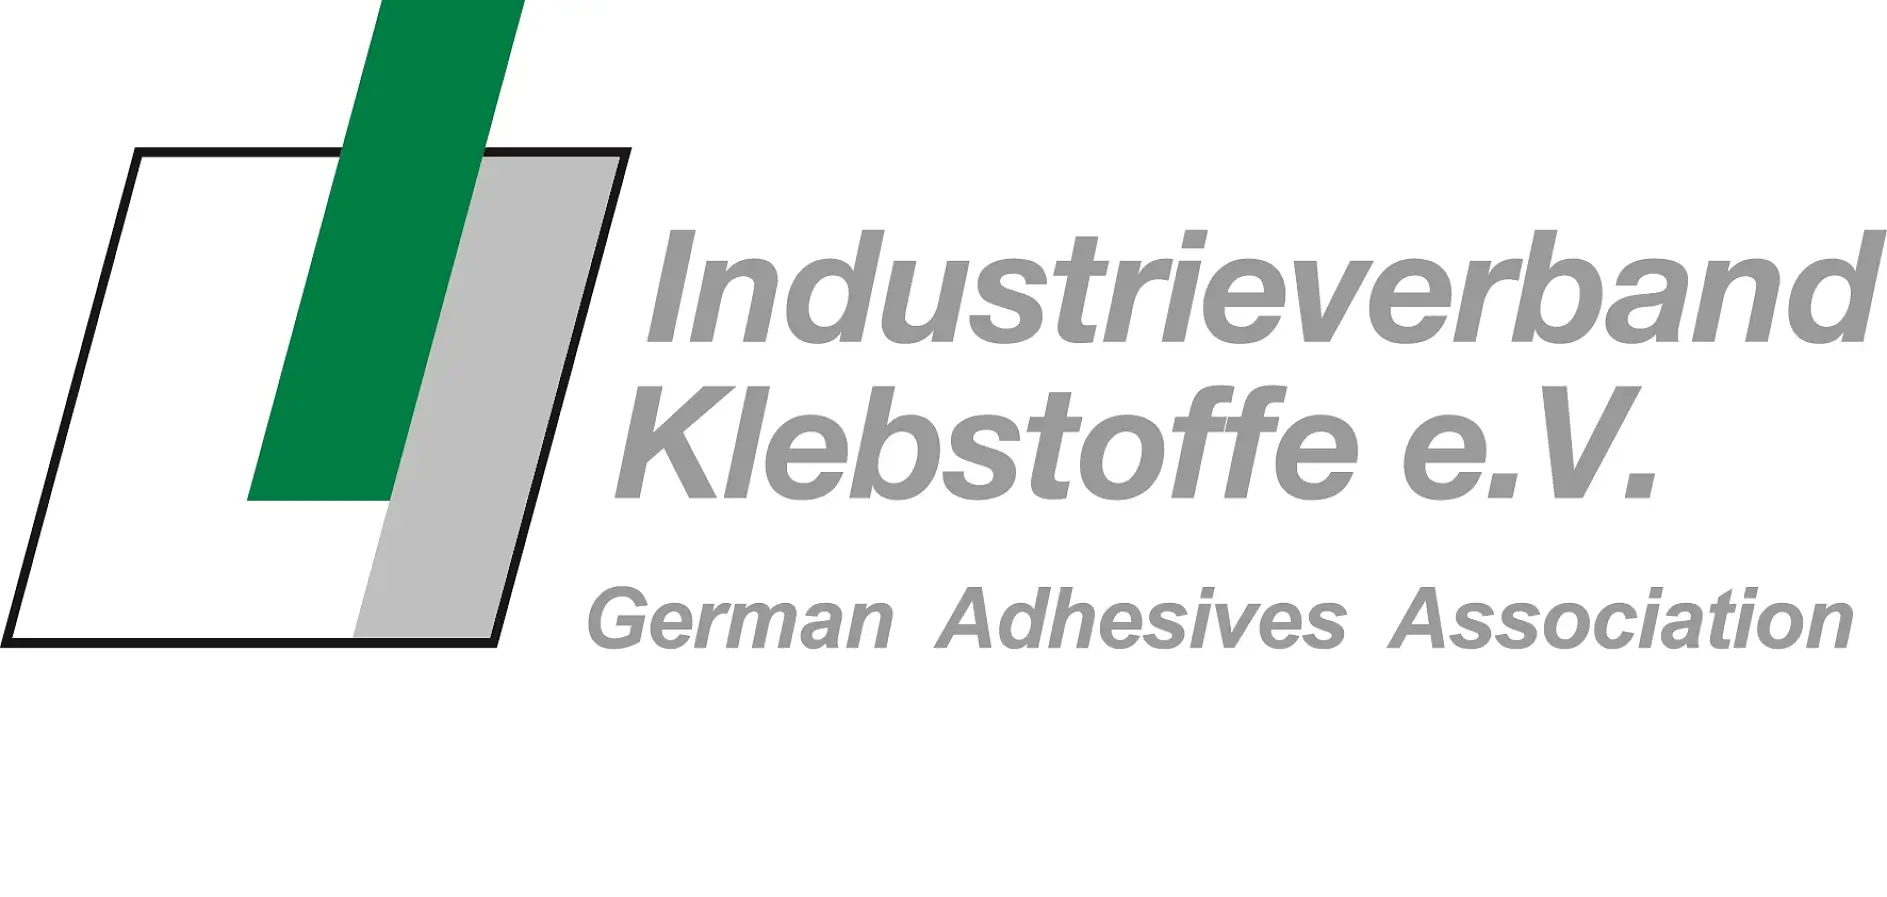 Alman Yapıştırıcılar Derneği, geniş hizmet portföyüyle yapıştırıcı teknolojisi alanında dünyanın en büyük ve dünya lideri bir ulusal organizasyondur.